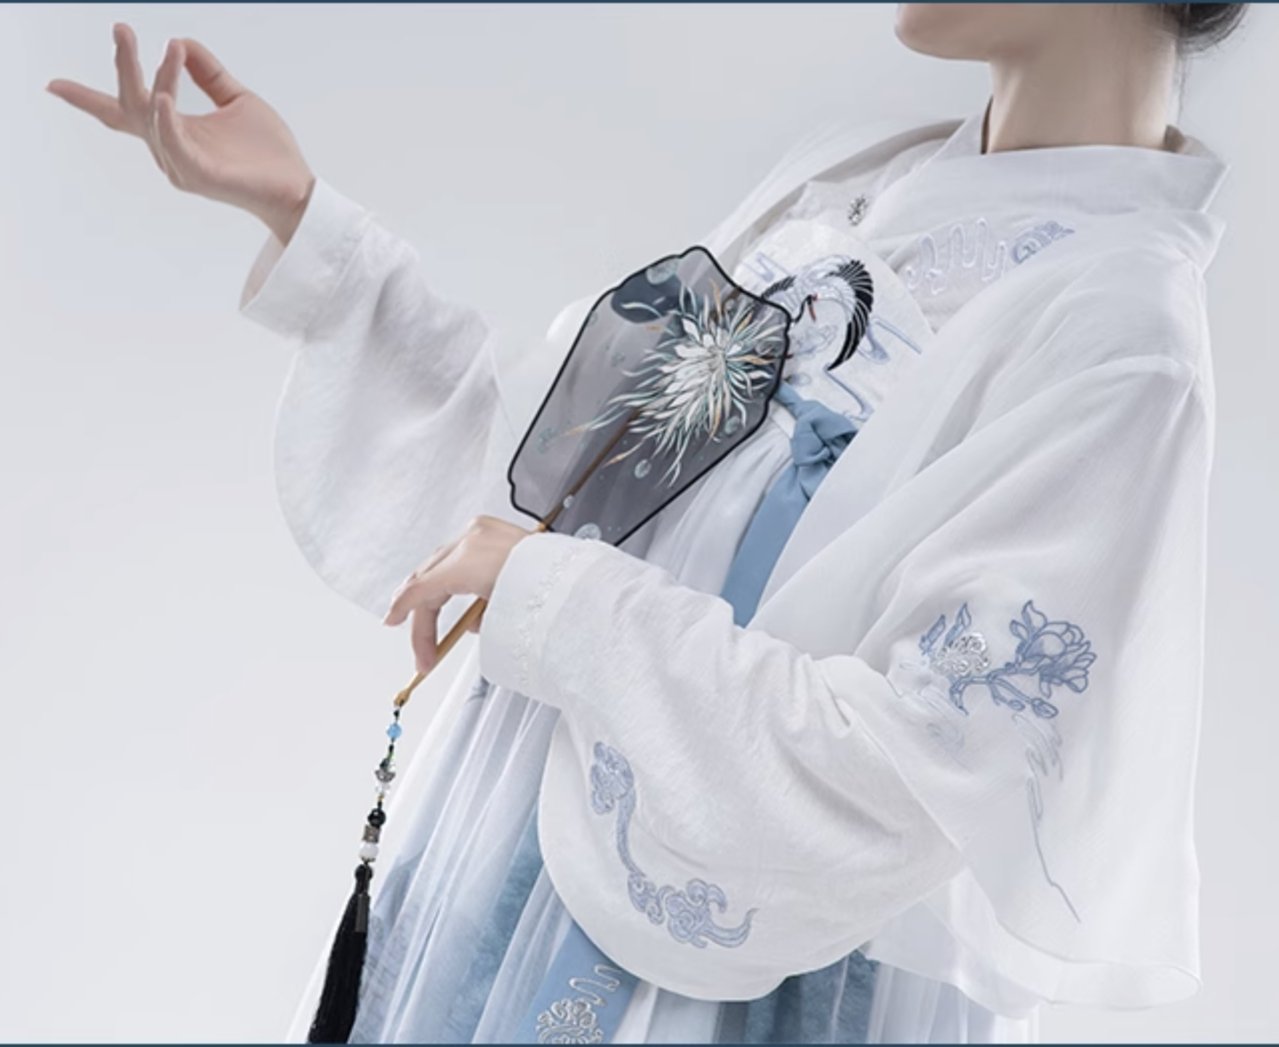 MDZS Lan Wangji Cosplay Costume For Girls 15106:321841